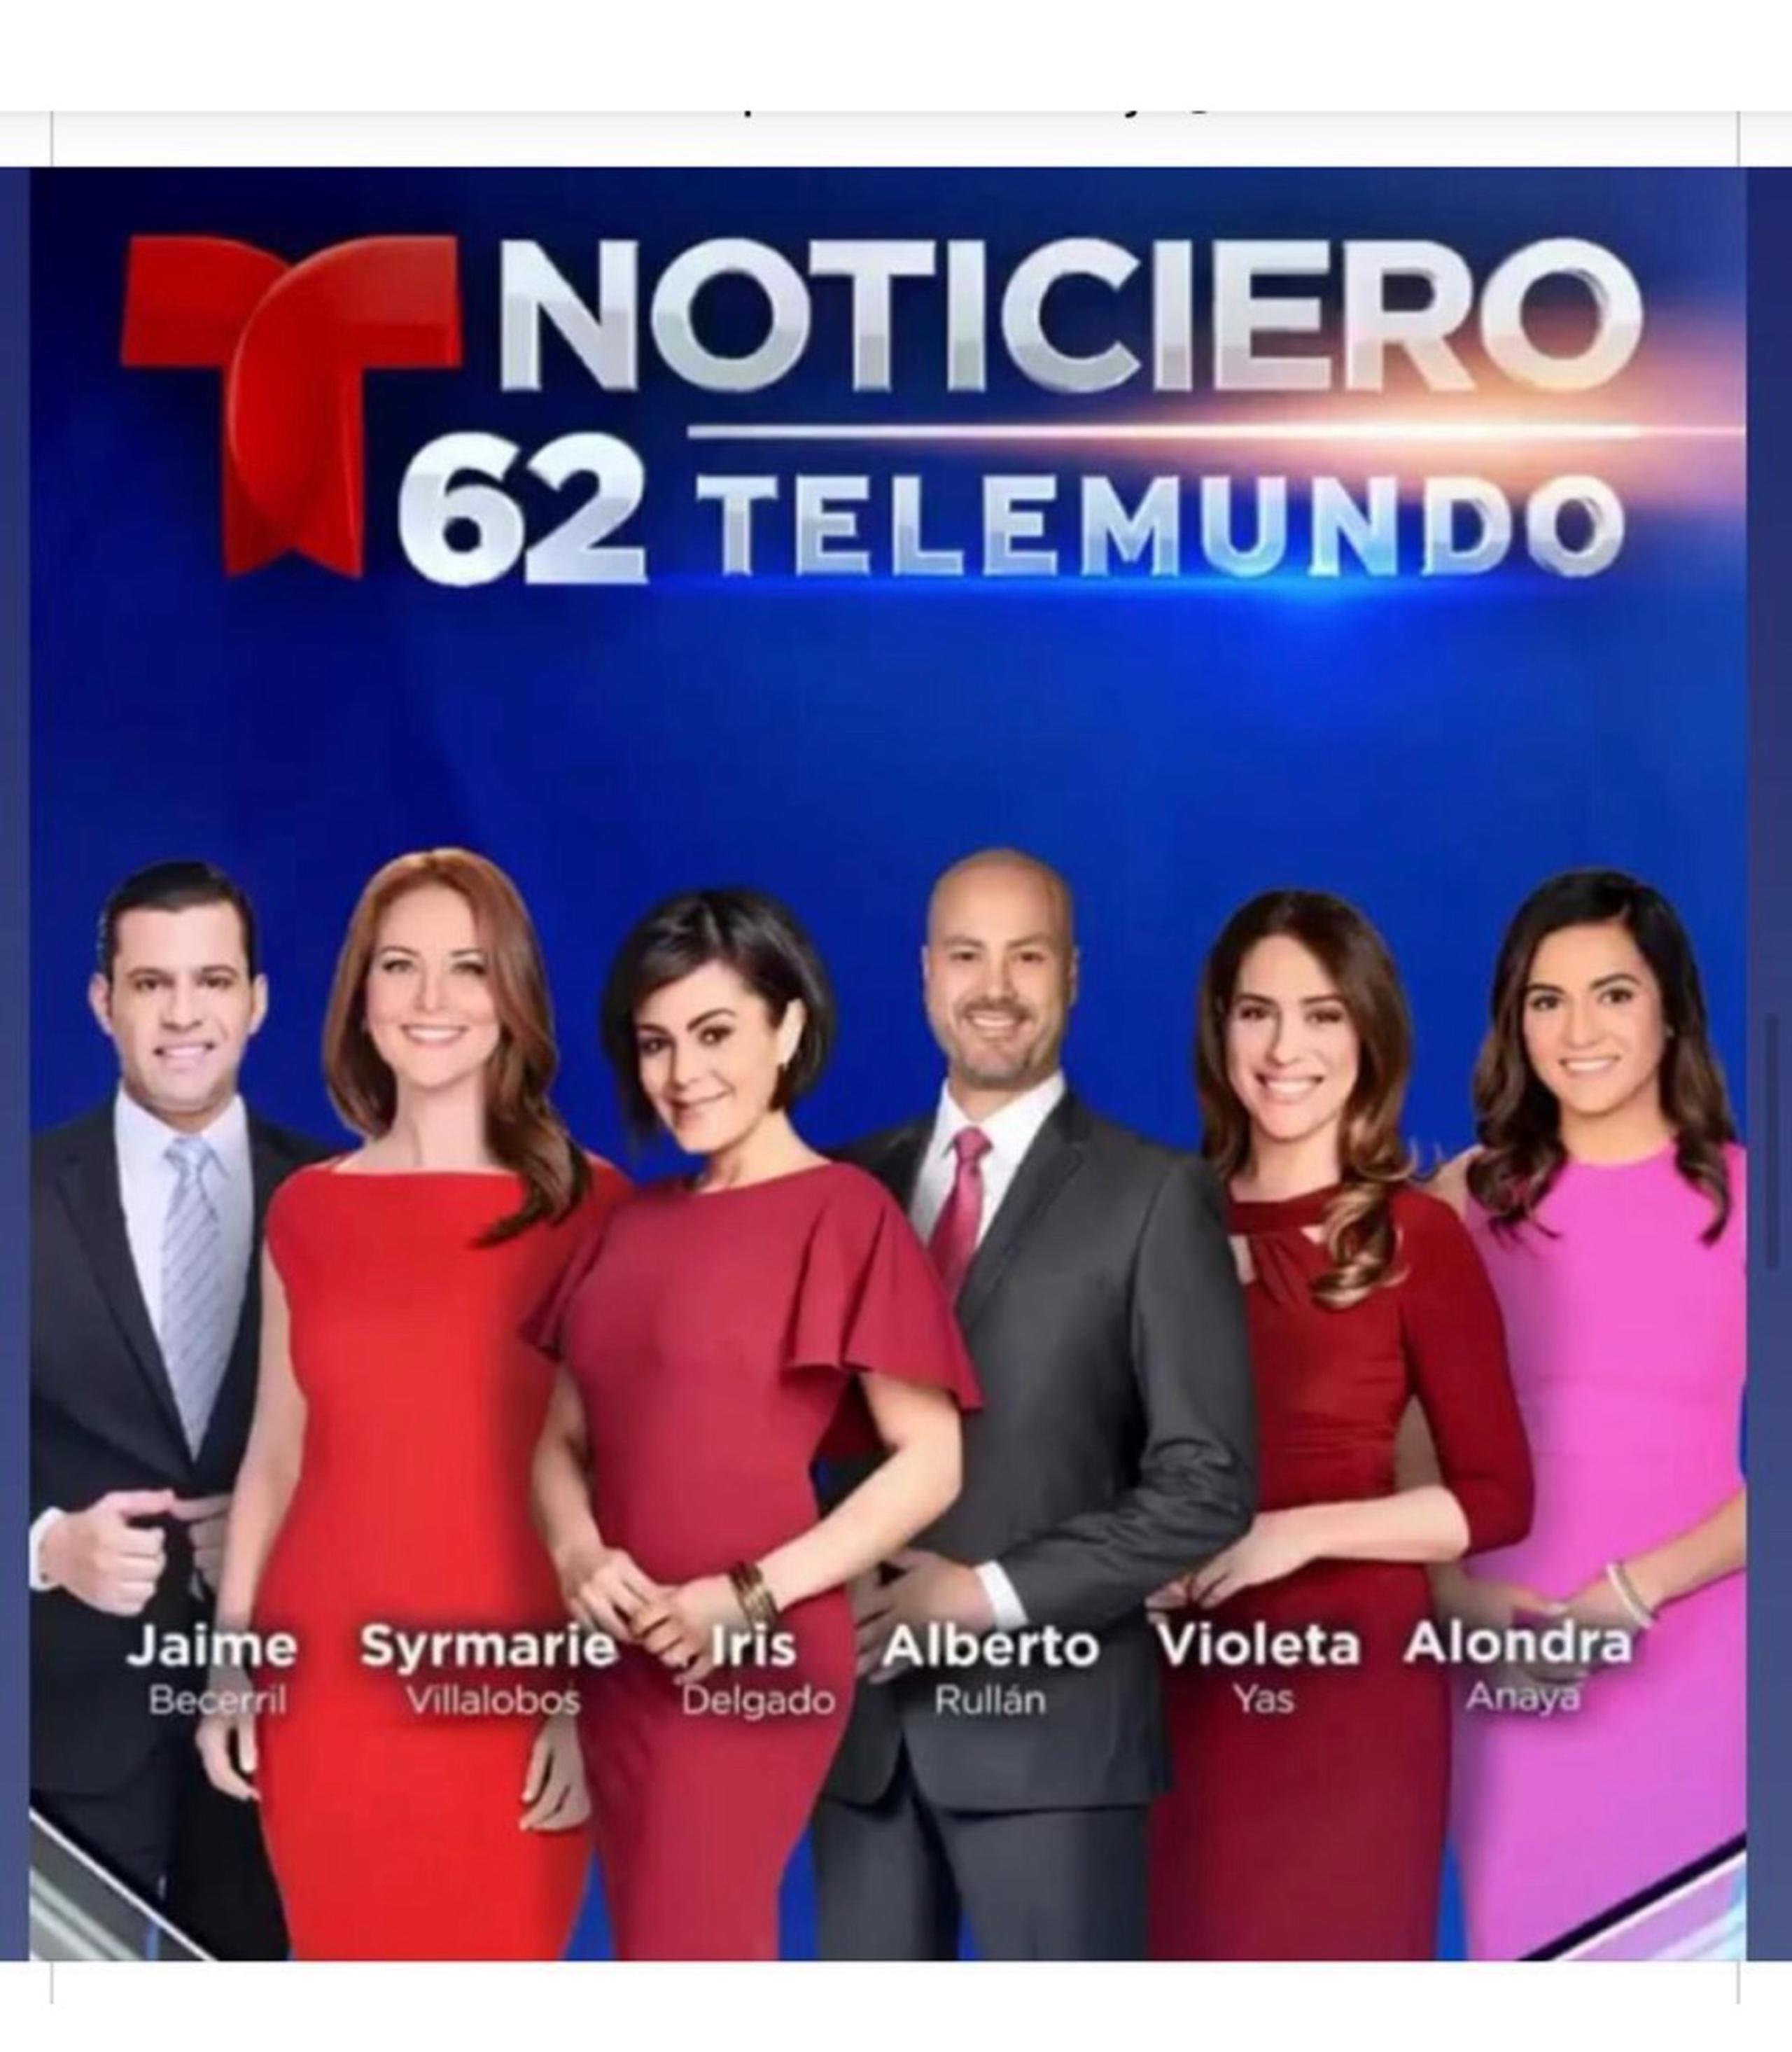 Alberto Rullán y Syrmarie Villalobos, boricuas que laboran en Noticiero 62 Telemundo en Filadelfia.